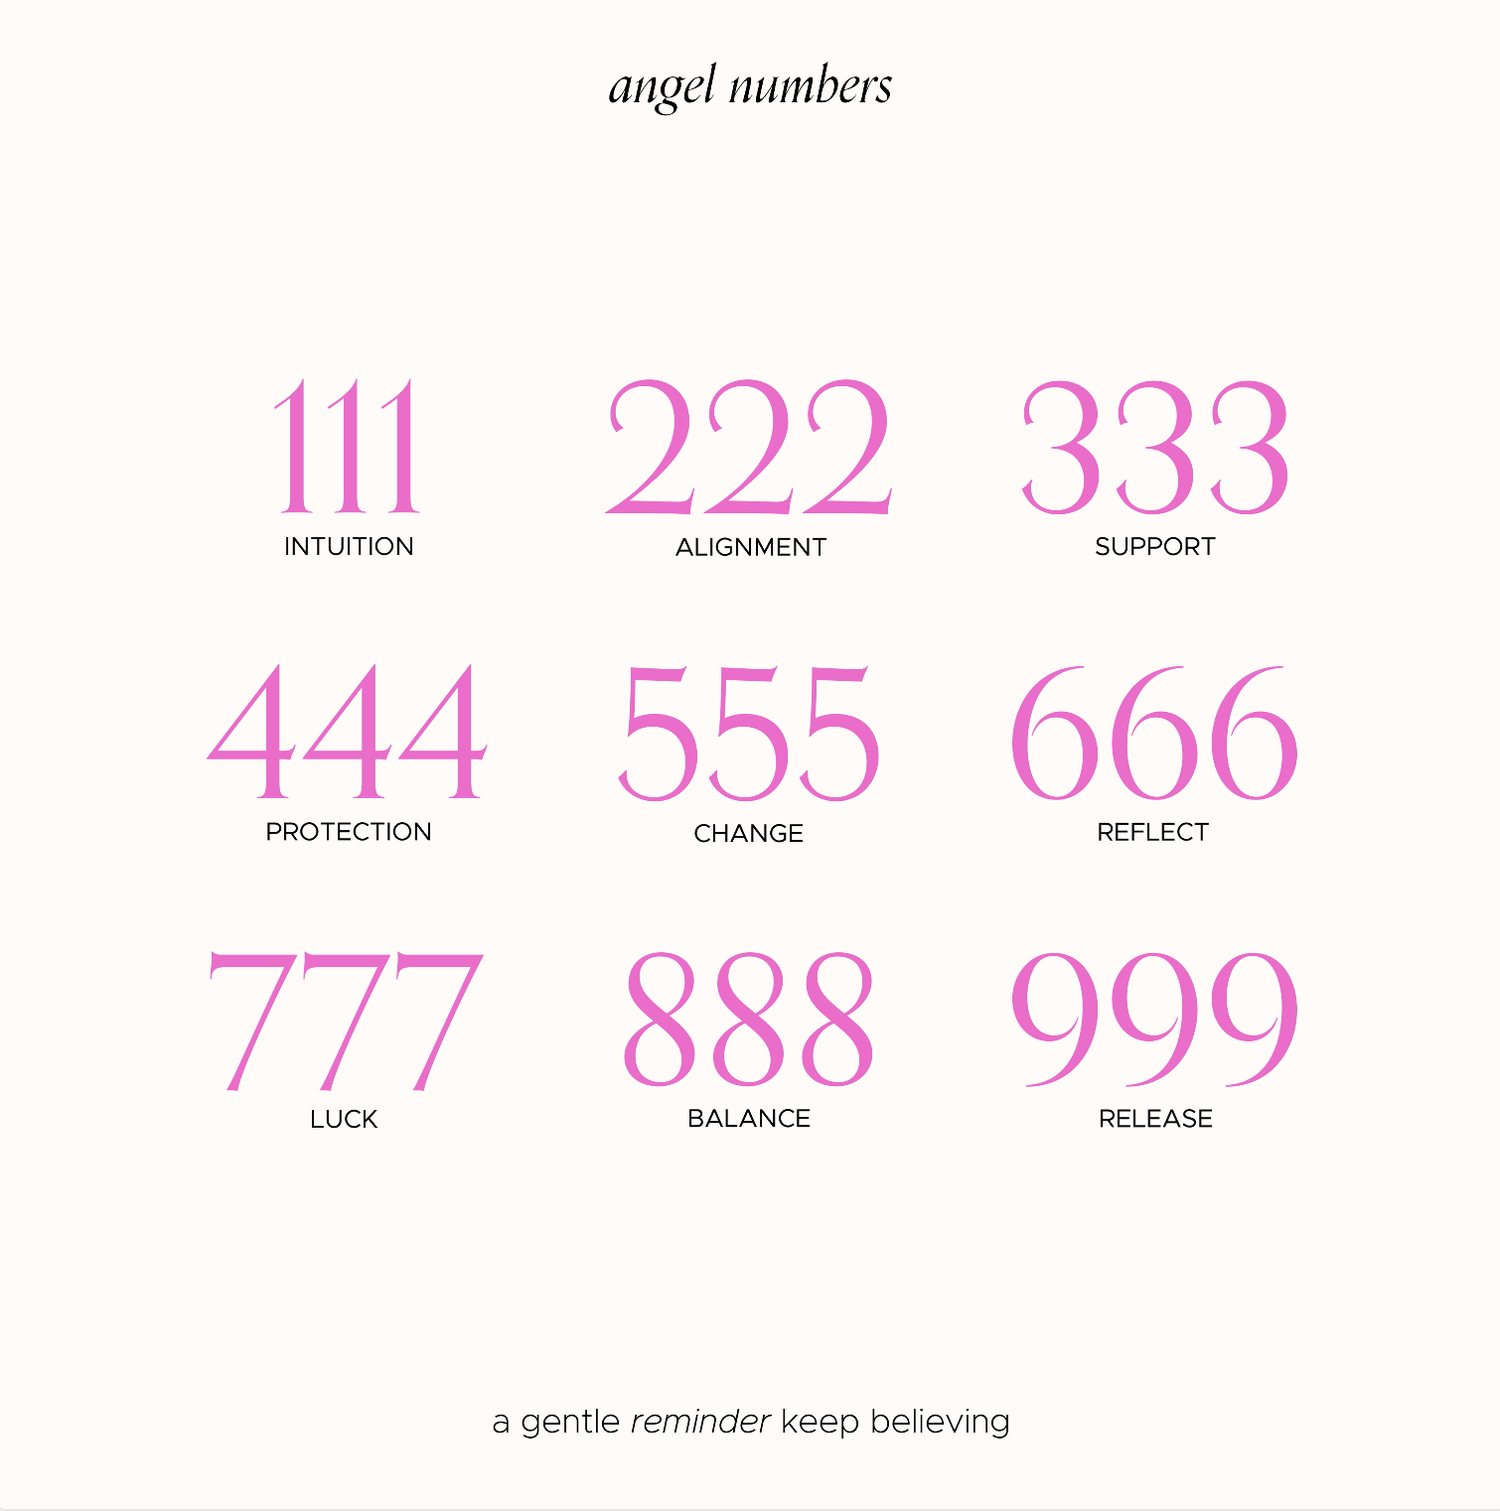 9111 angel number